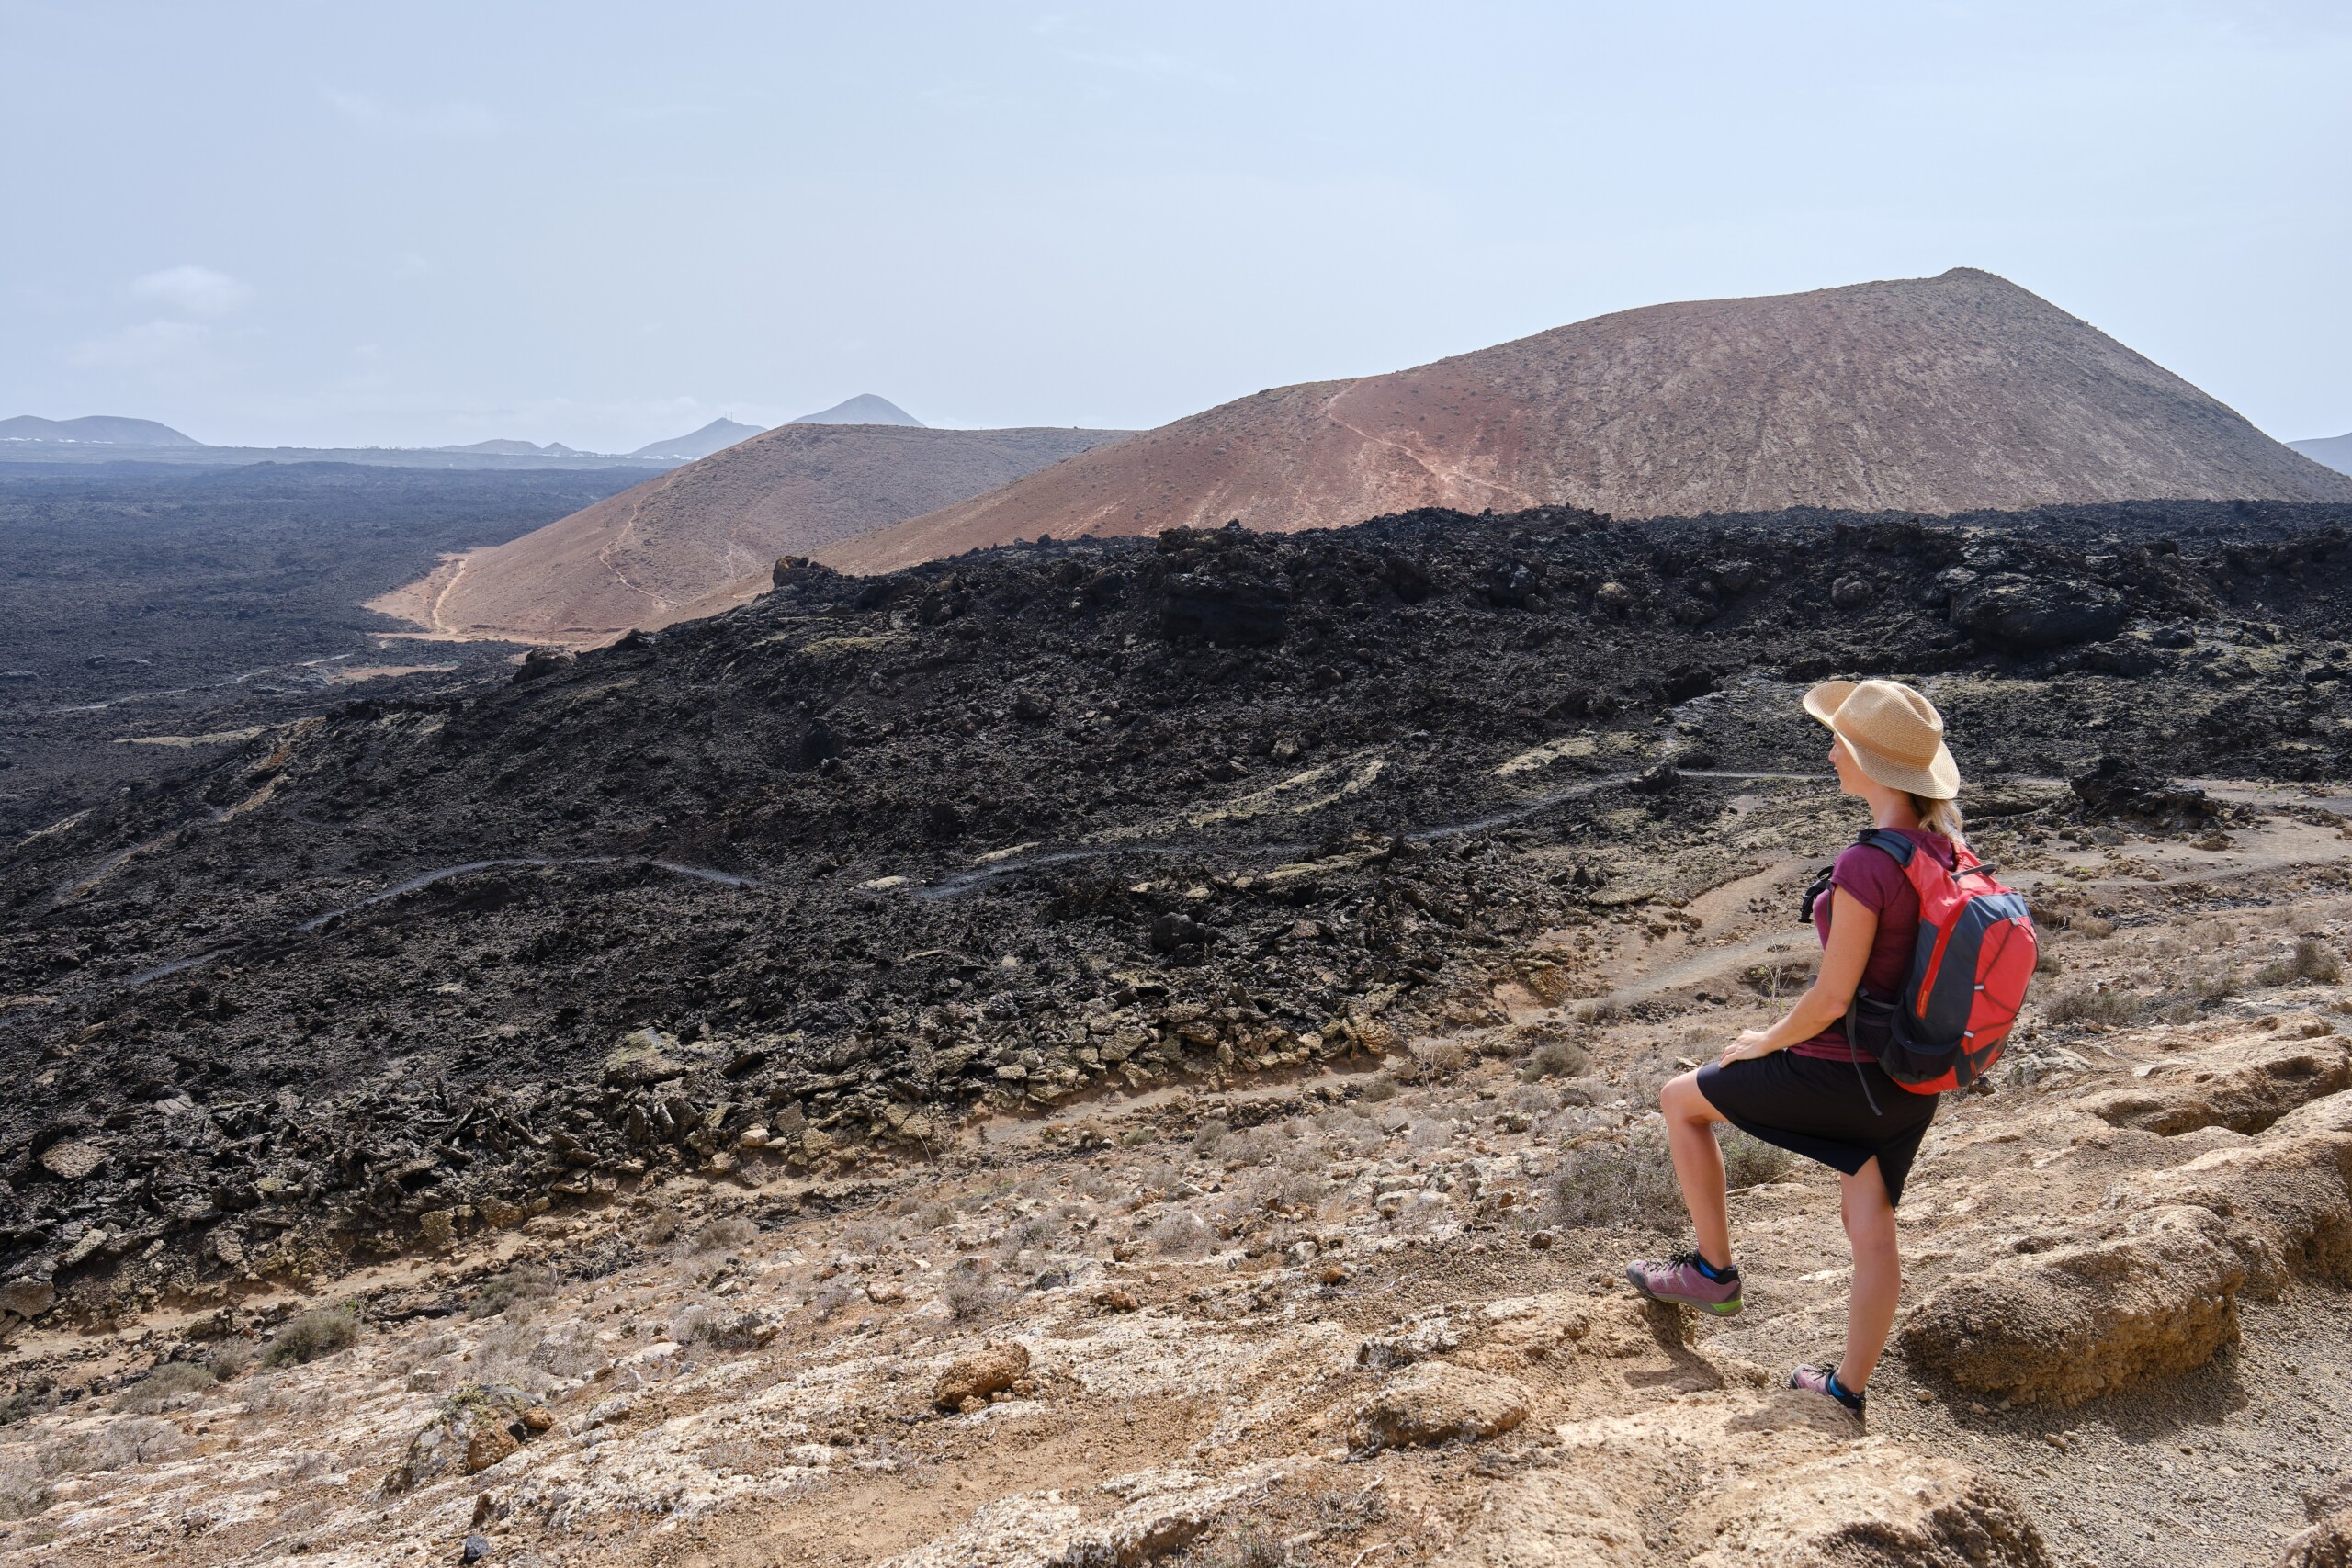 Kobieta uprawia trekking na skalistej wyspie Lanzarote, Wyspy Kanaryjskie, licencja: shutterstock/By Robert-JM